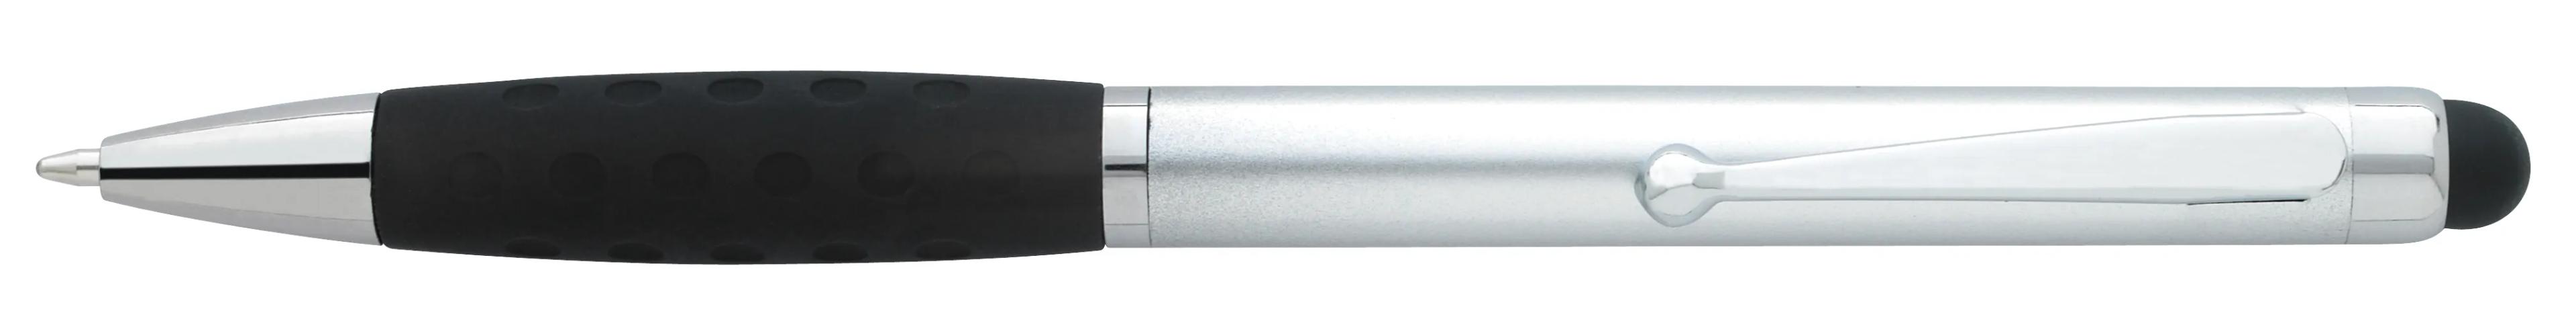 Silver Stylus Grip Pen 11 of 11